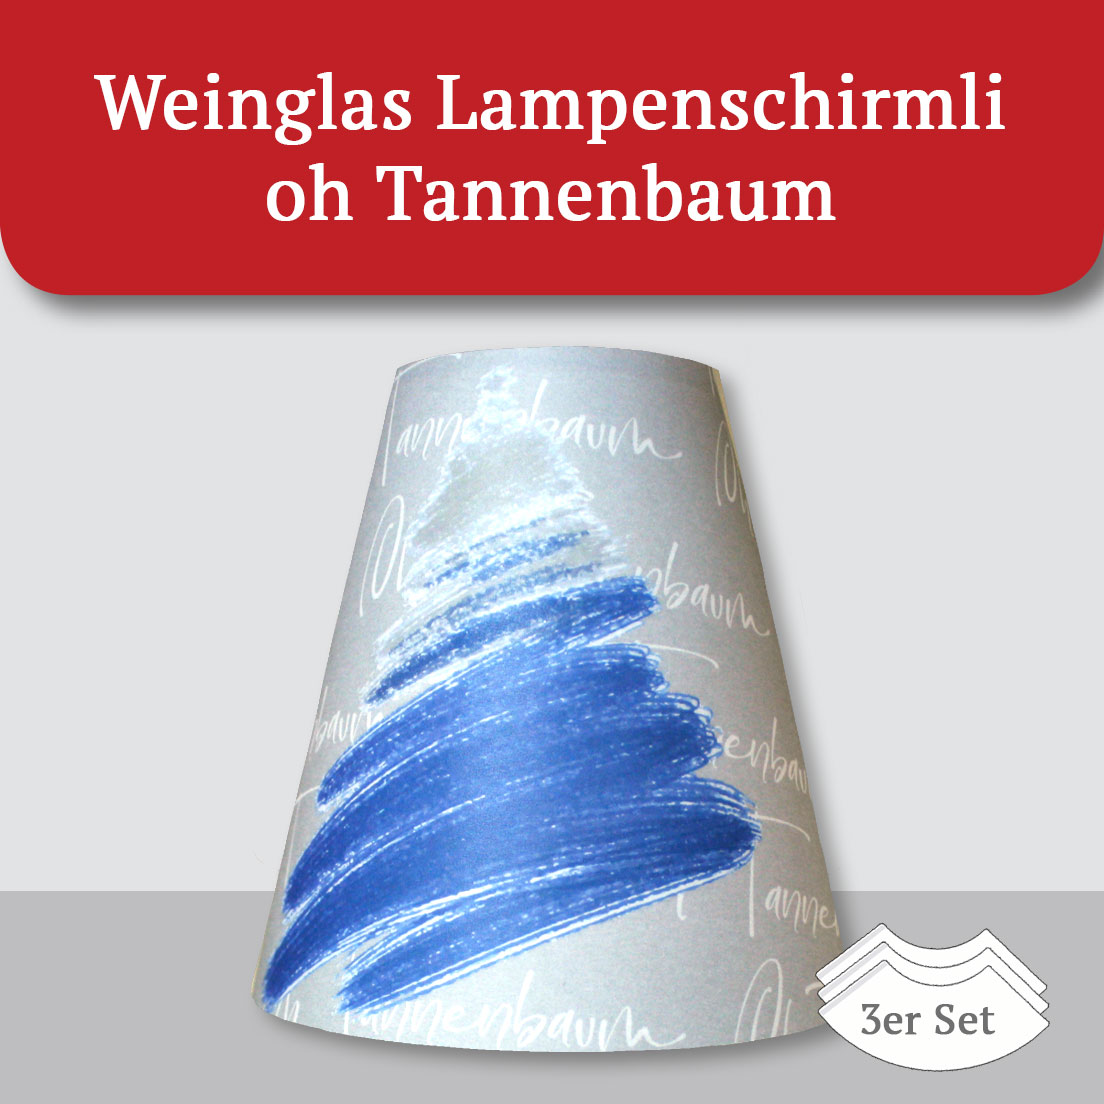 Weinglas Lampenschirmli oh Tannenbaum